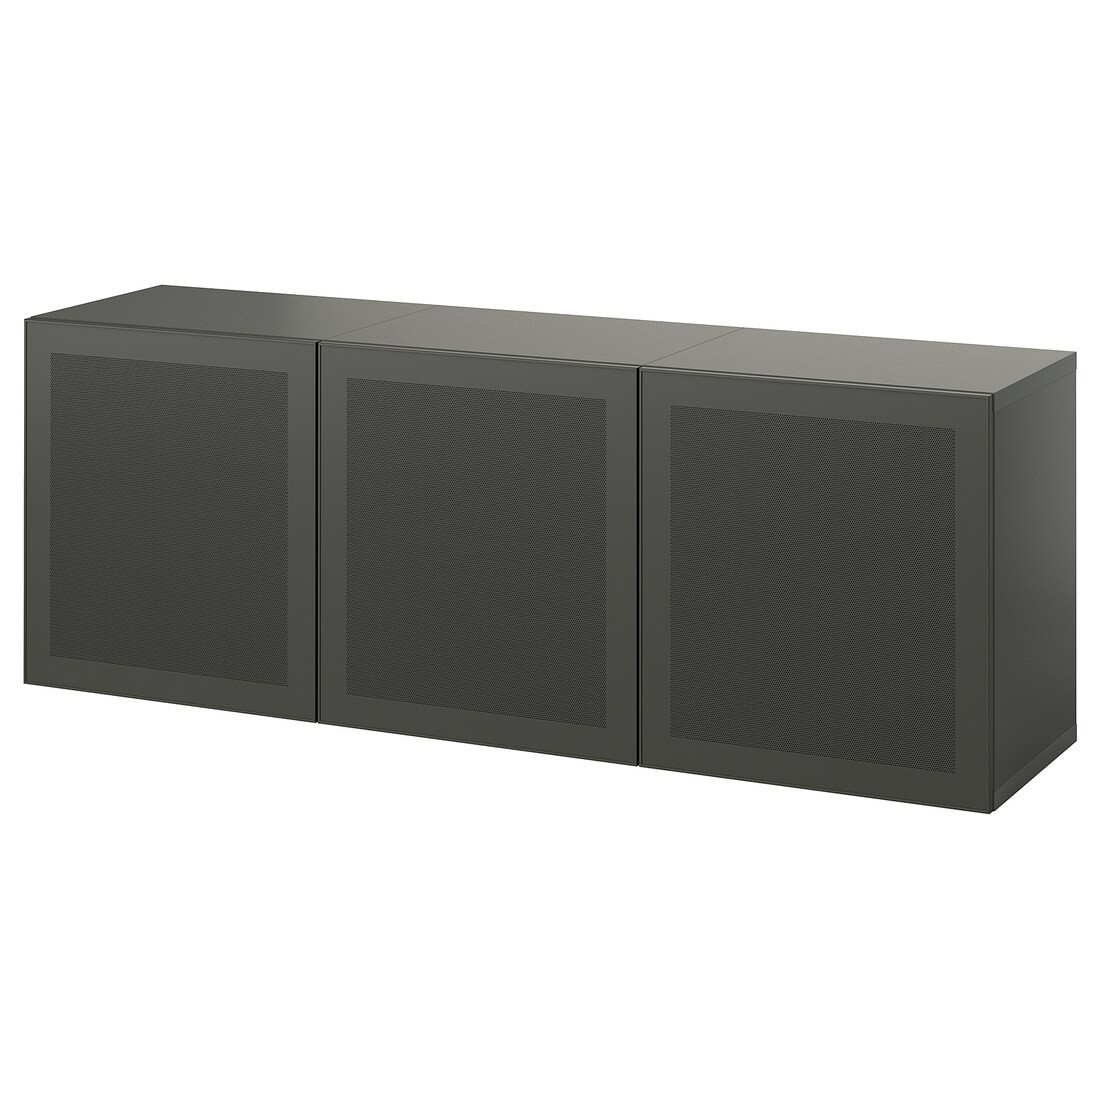 IKEA BESTÅ Комбінація настінних шаф, темно-сірий / Mörtviken темно-сірий, 180x42x64 см 29508116 295.081.16